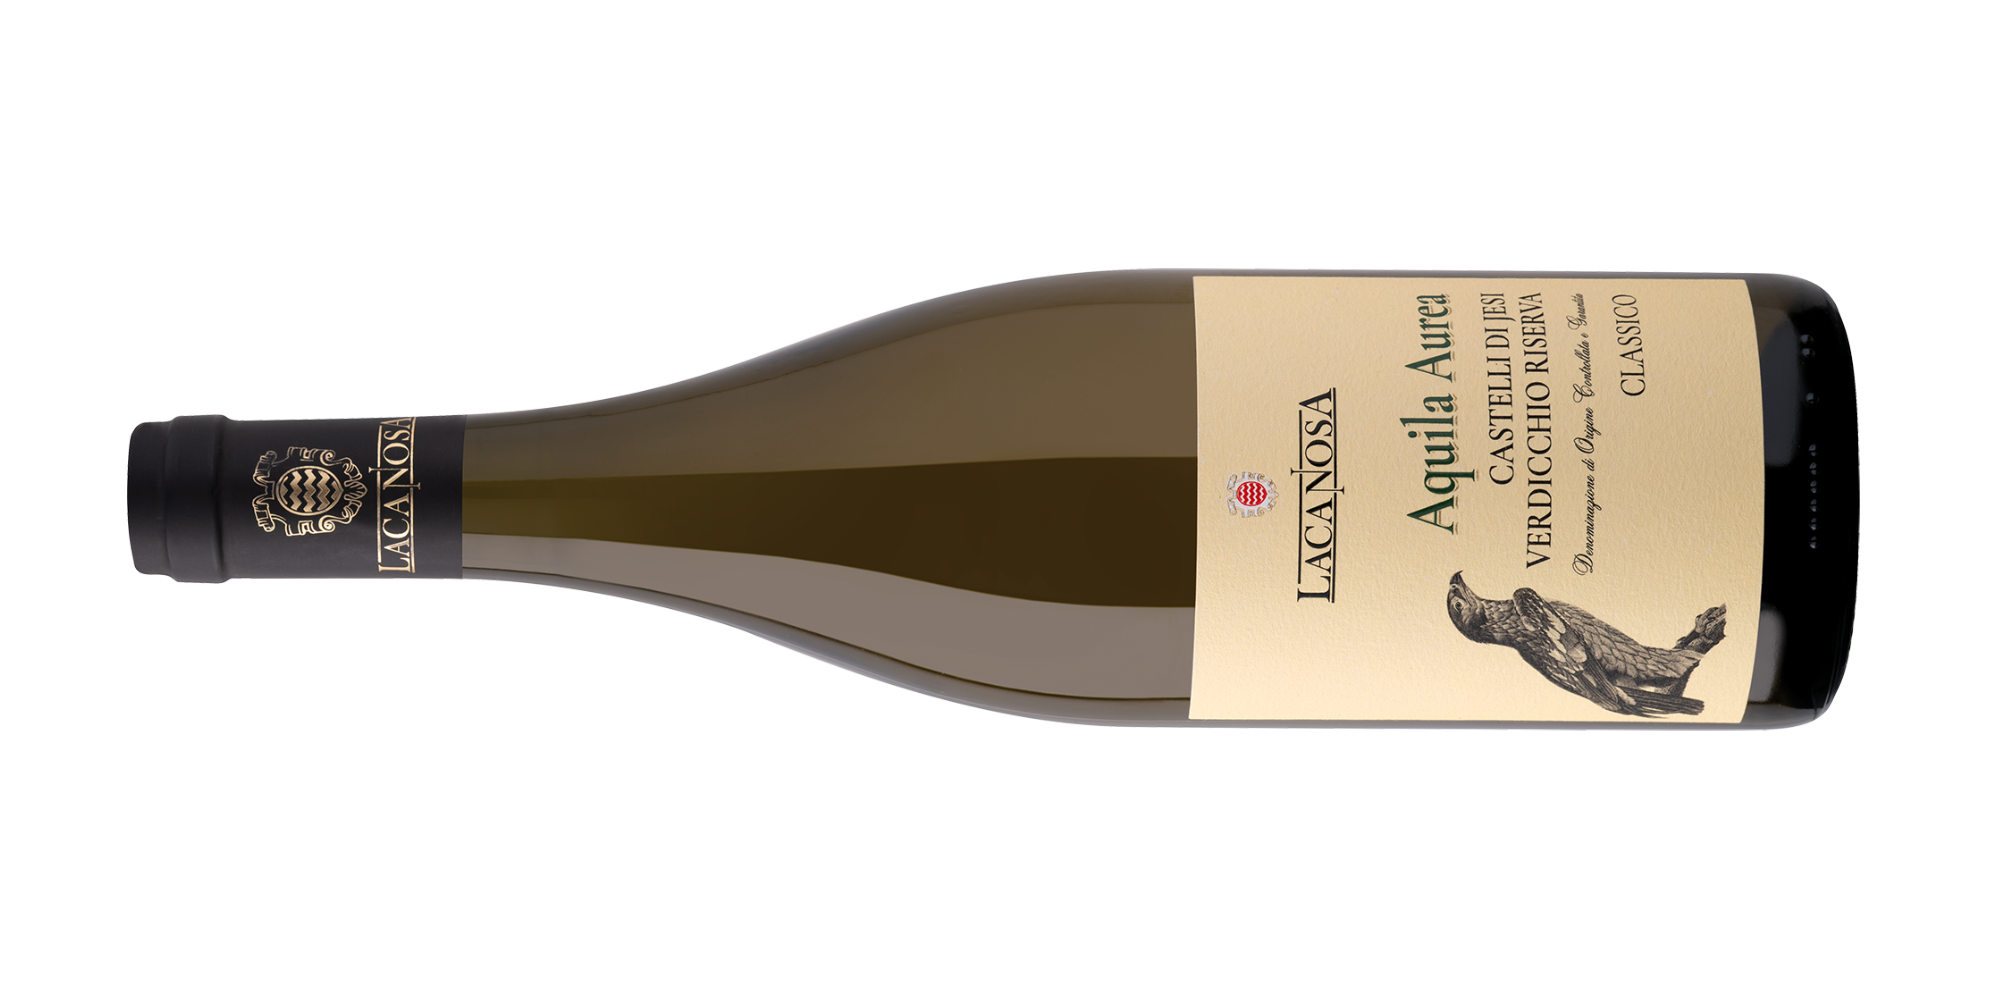 La Canosa Wines - High quality white wine - Aquila Aurea - Verdicchio dei castelli di Jesi Classico Riserva DOCG